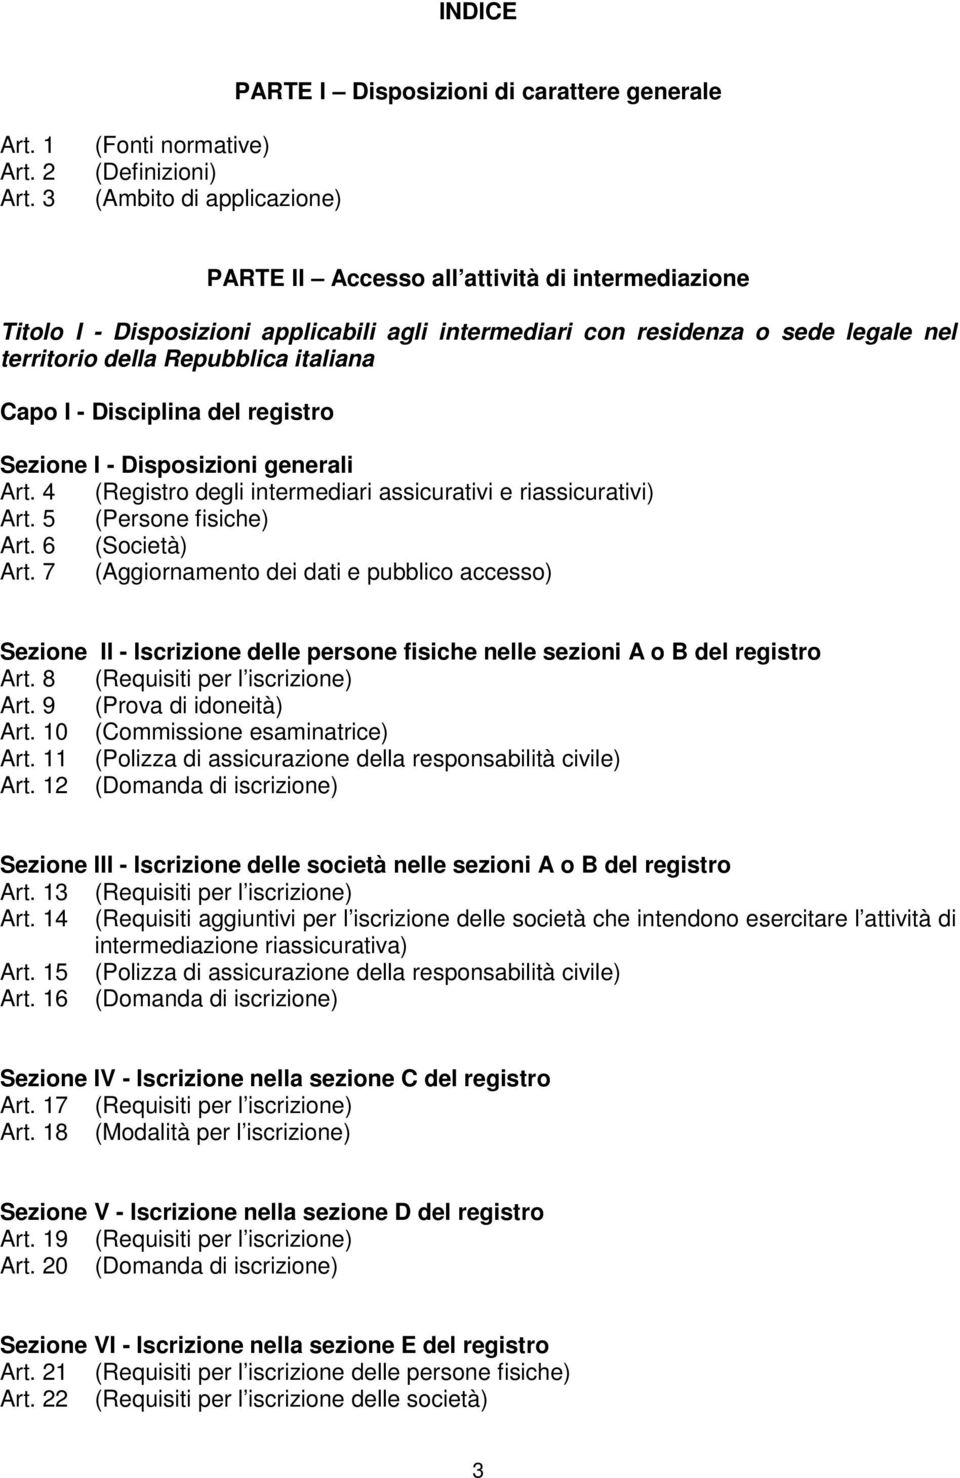 territorio della Repubblica italiana Capo I - Disciplina del registro Sezione I - Disposizioni generali Art. 4 (Registro degli intermediari assicurativi e riassicurativi) Art. 5 (Persone fisiche) Art.